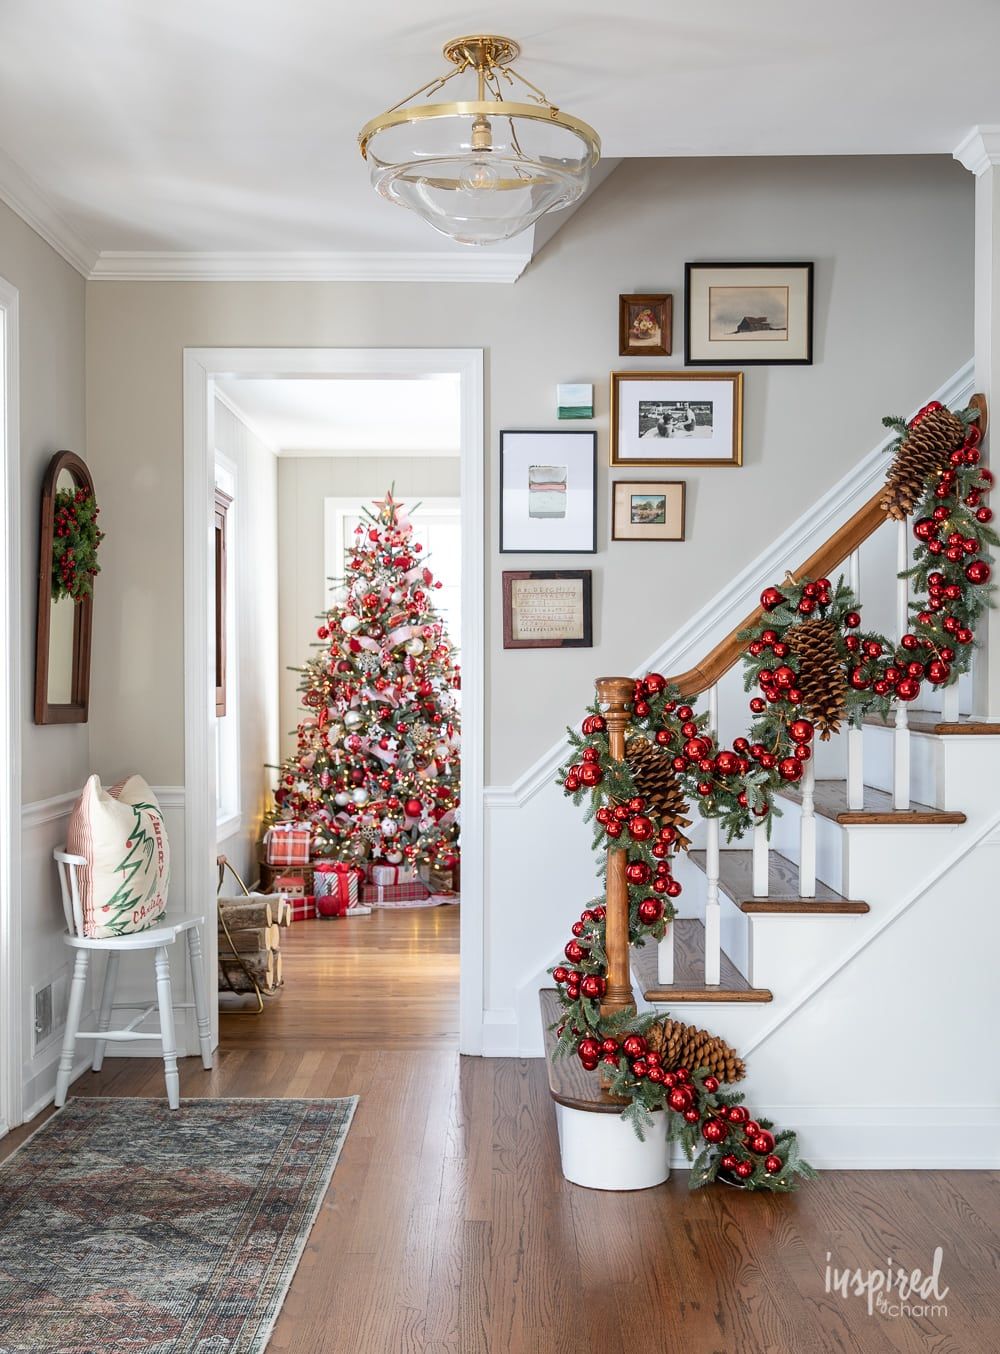 Come Addobbare la Casa per Natale - Come Fare, Allestire, Decorare -  Decorazioni Natalizie